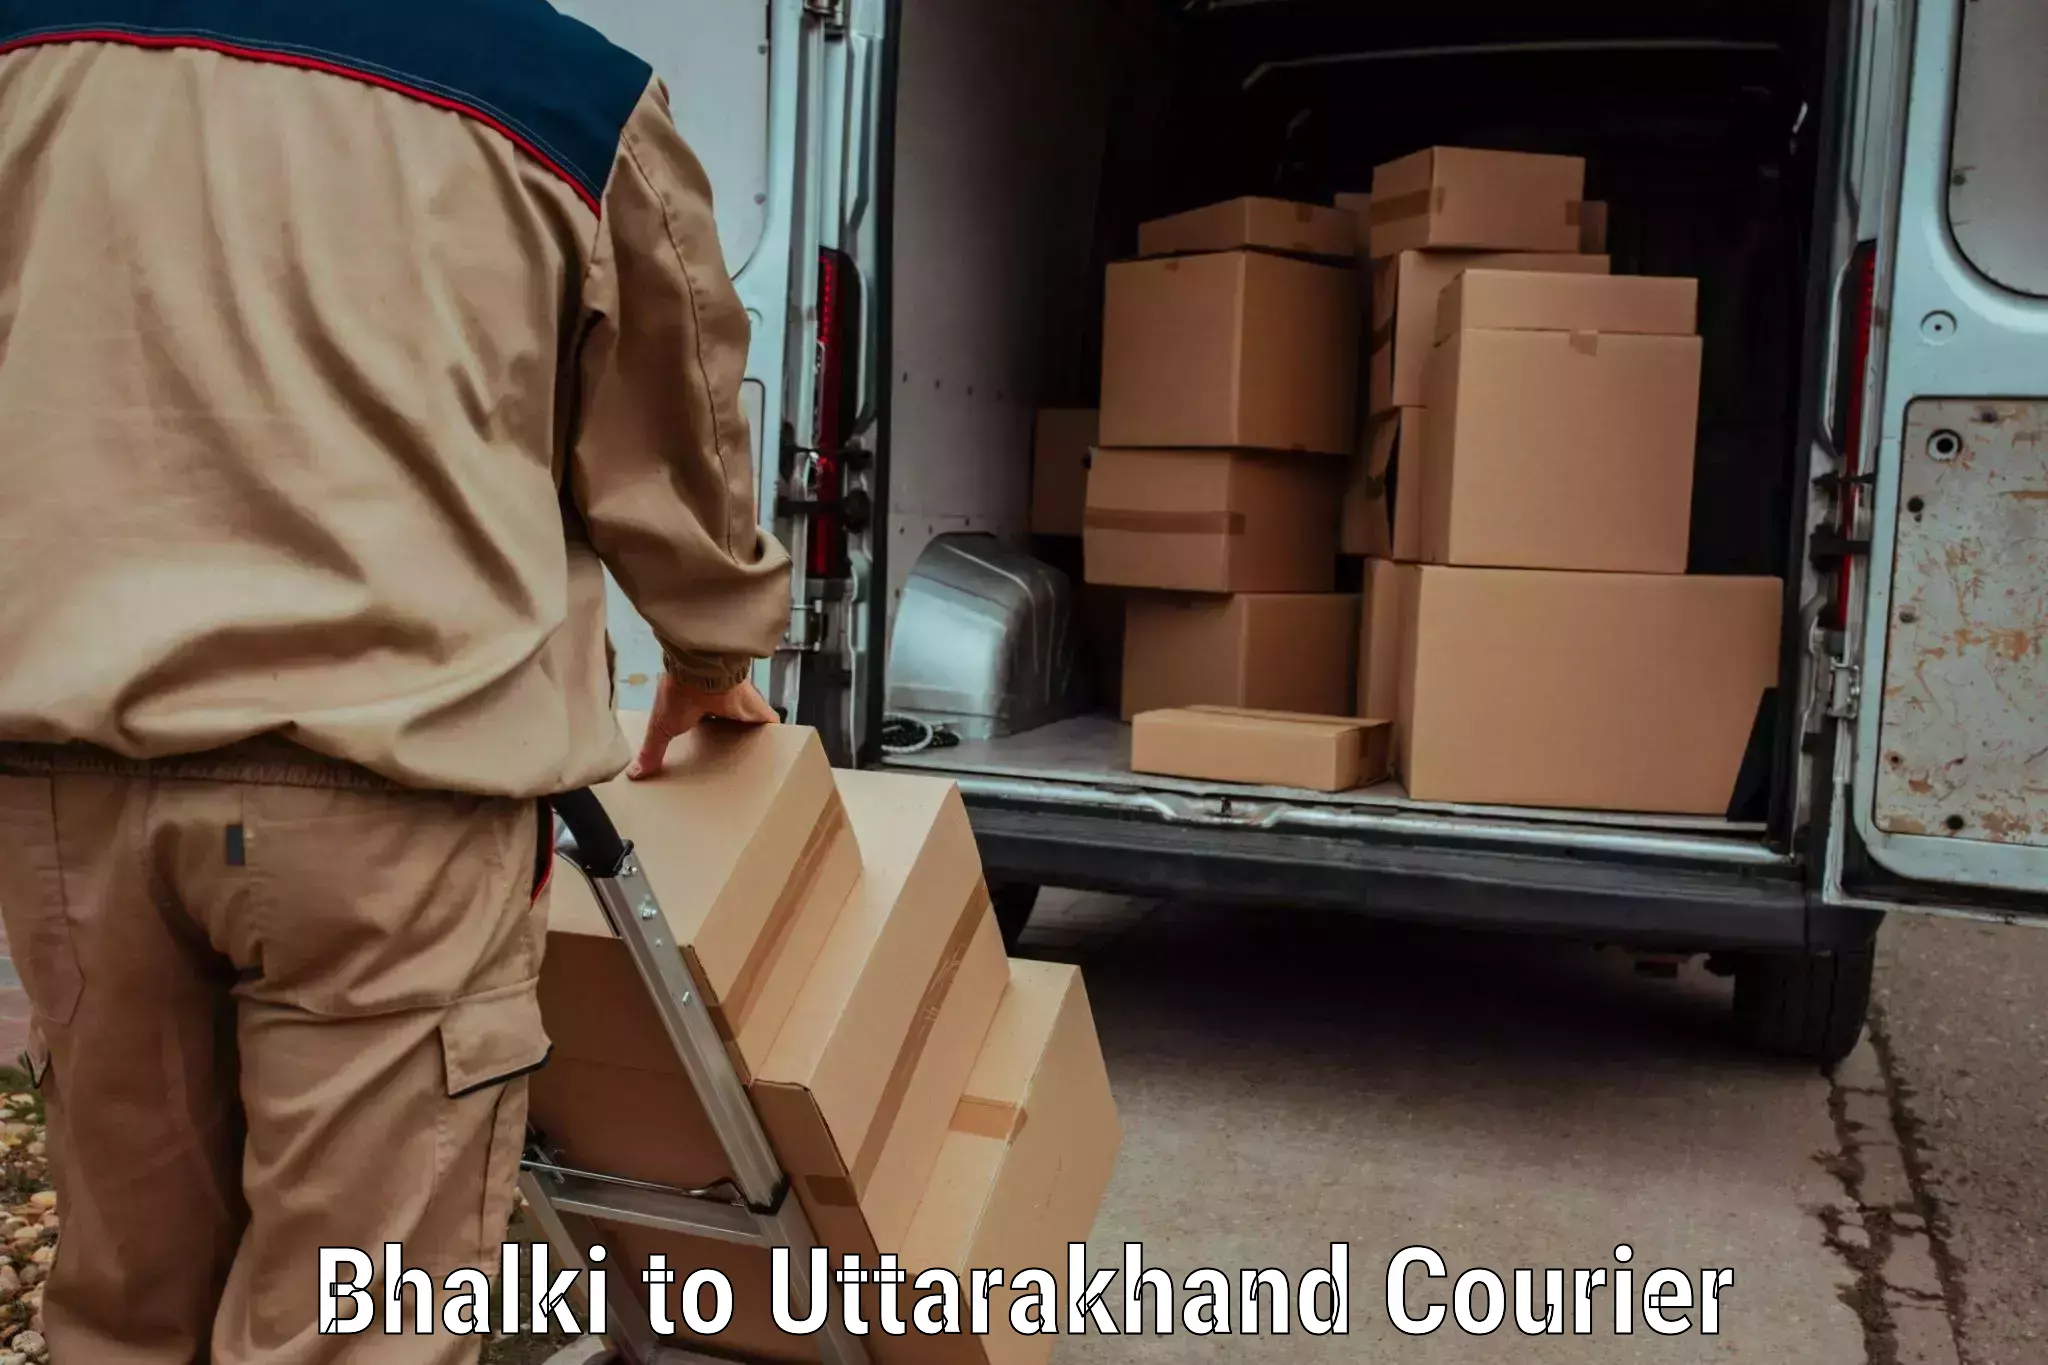 High-speed parcel service Bhalki to Haridwar